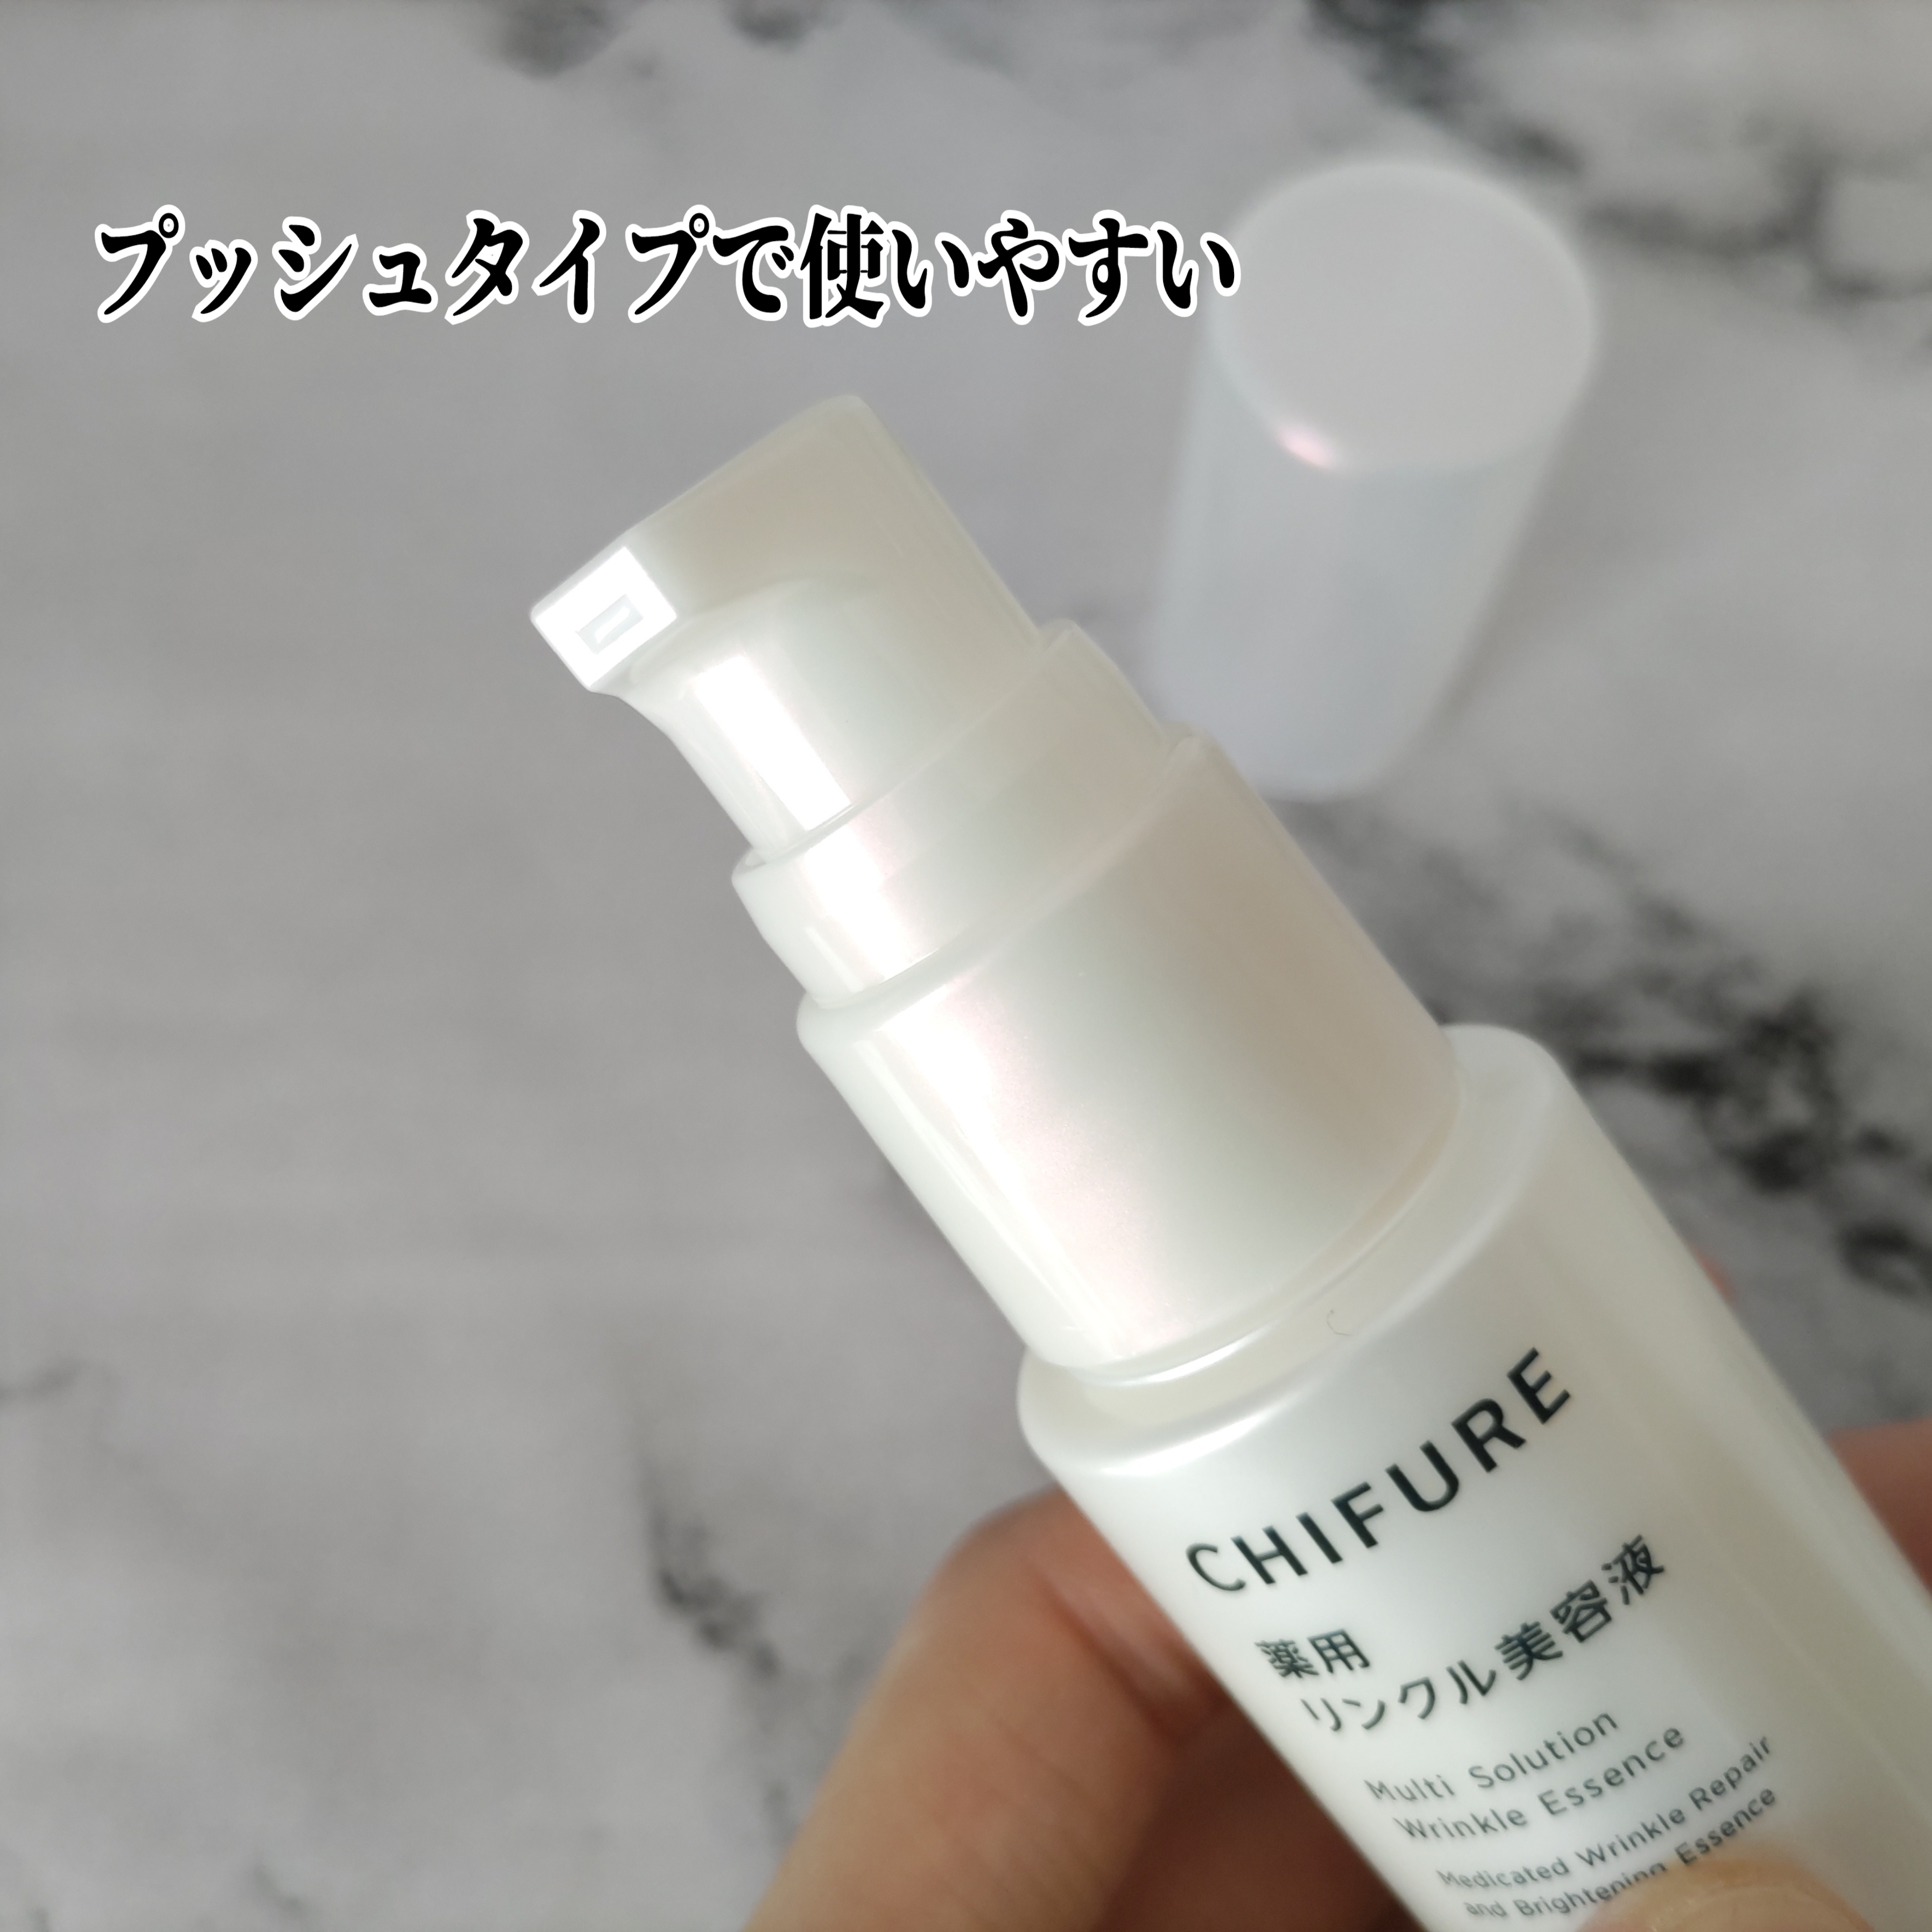 CHIFURE 薬用 リンクル美容液に関するYuKaRi♡さんの口コミ画像3